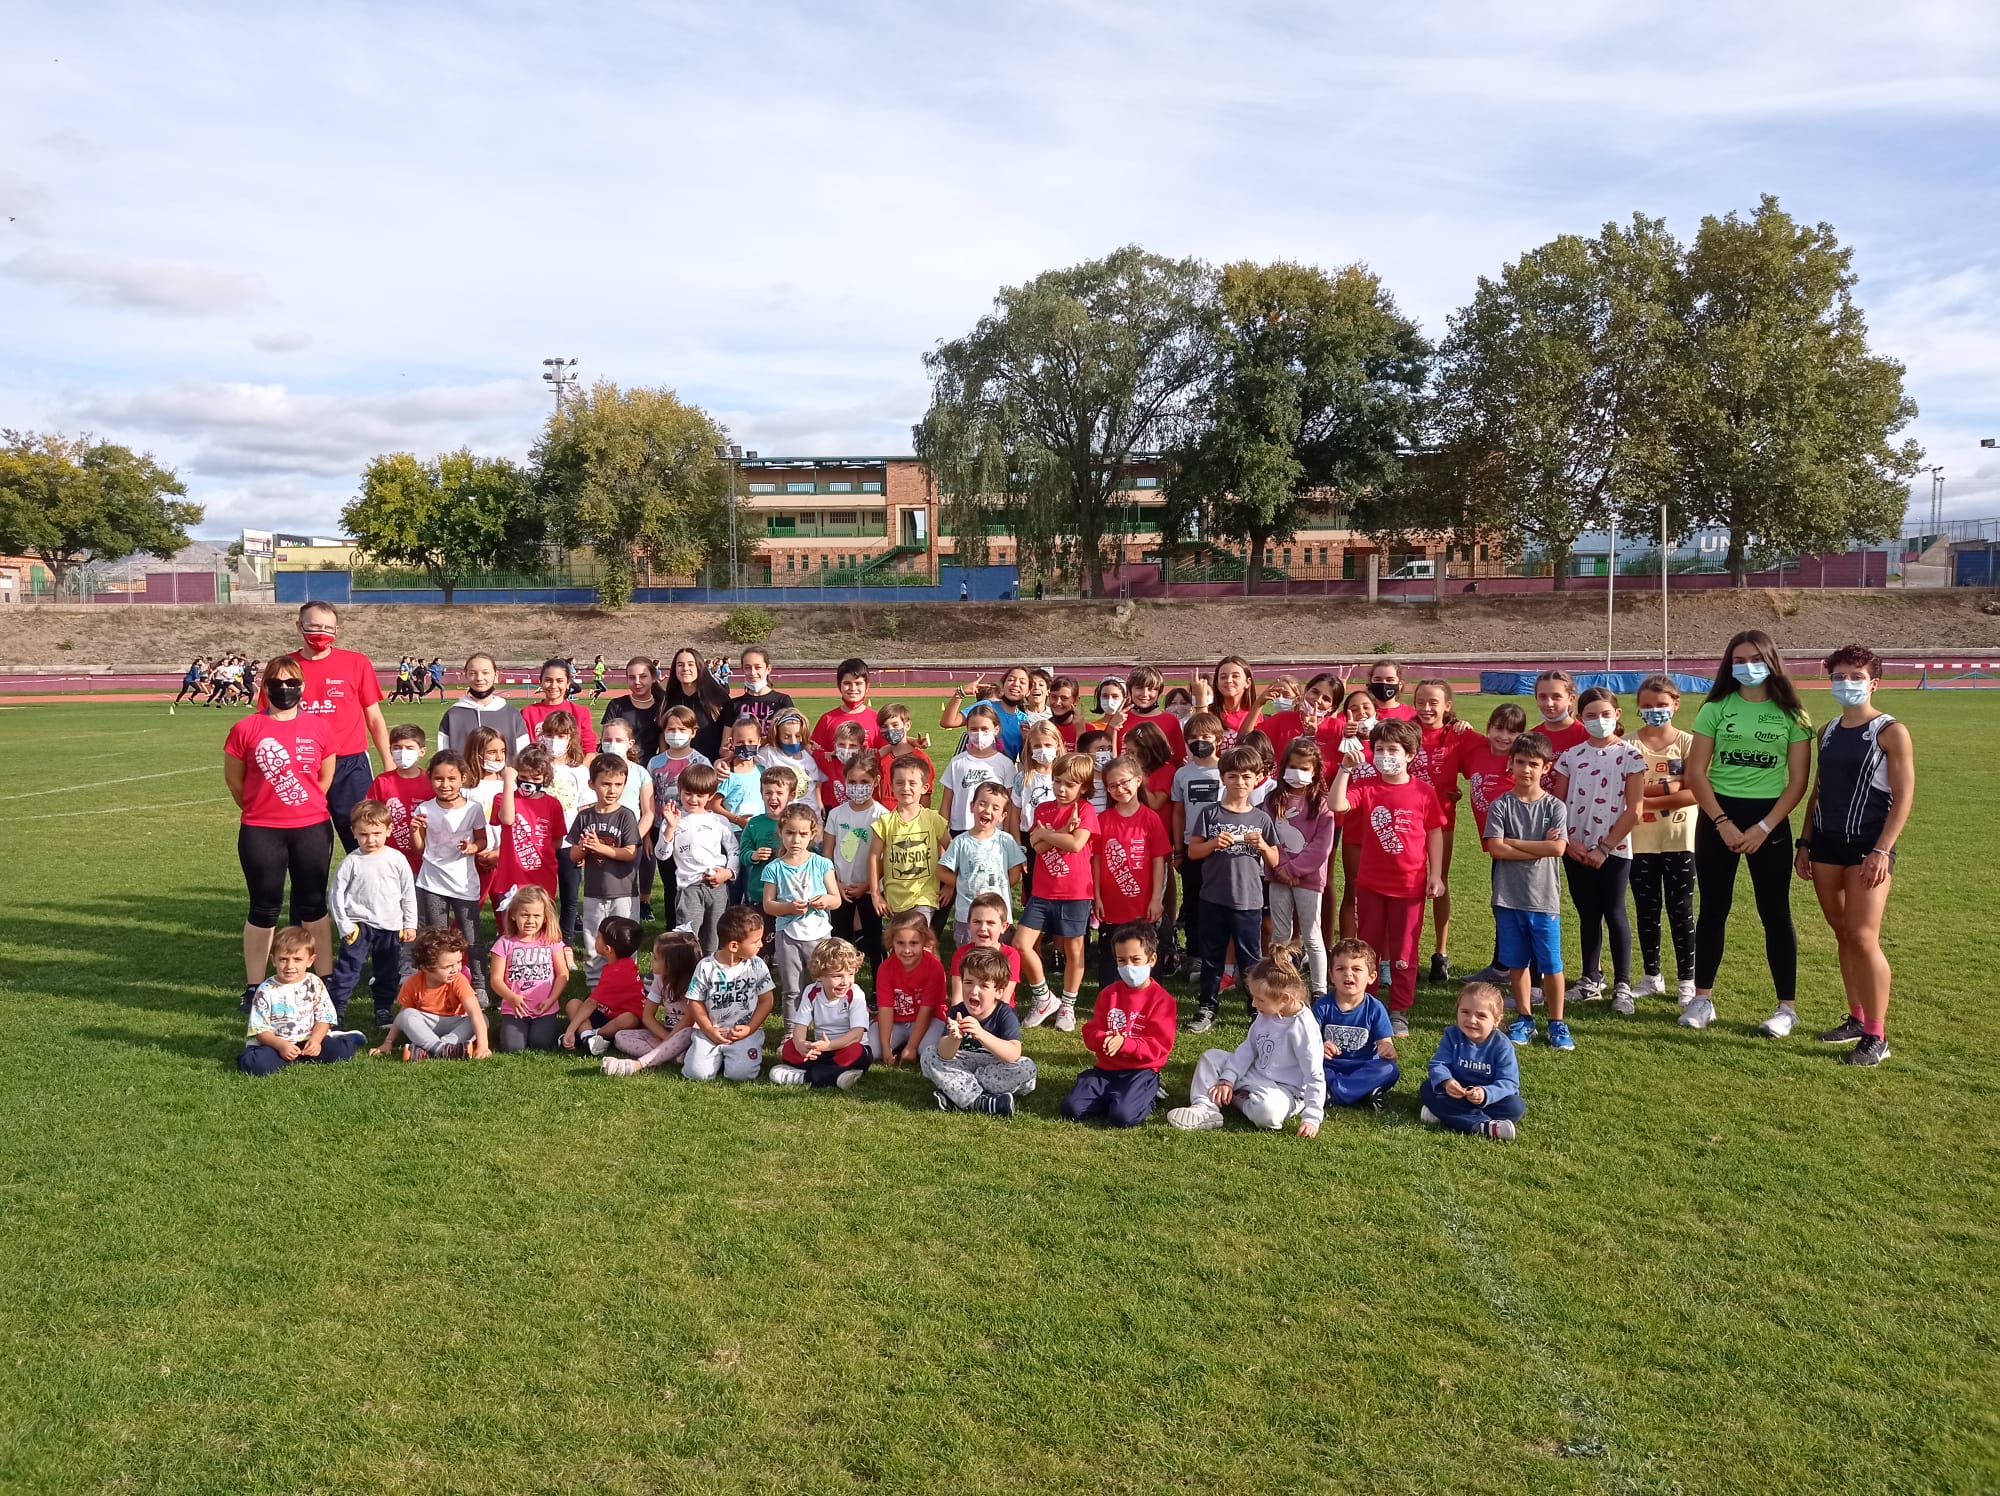 El lunes 5 de septiembre comienza la temporada 2022-2023 de la escuela de atletismo del CAS-Ciudad de Segovia y Venta Magullo